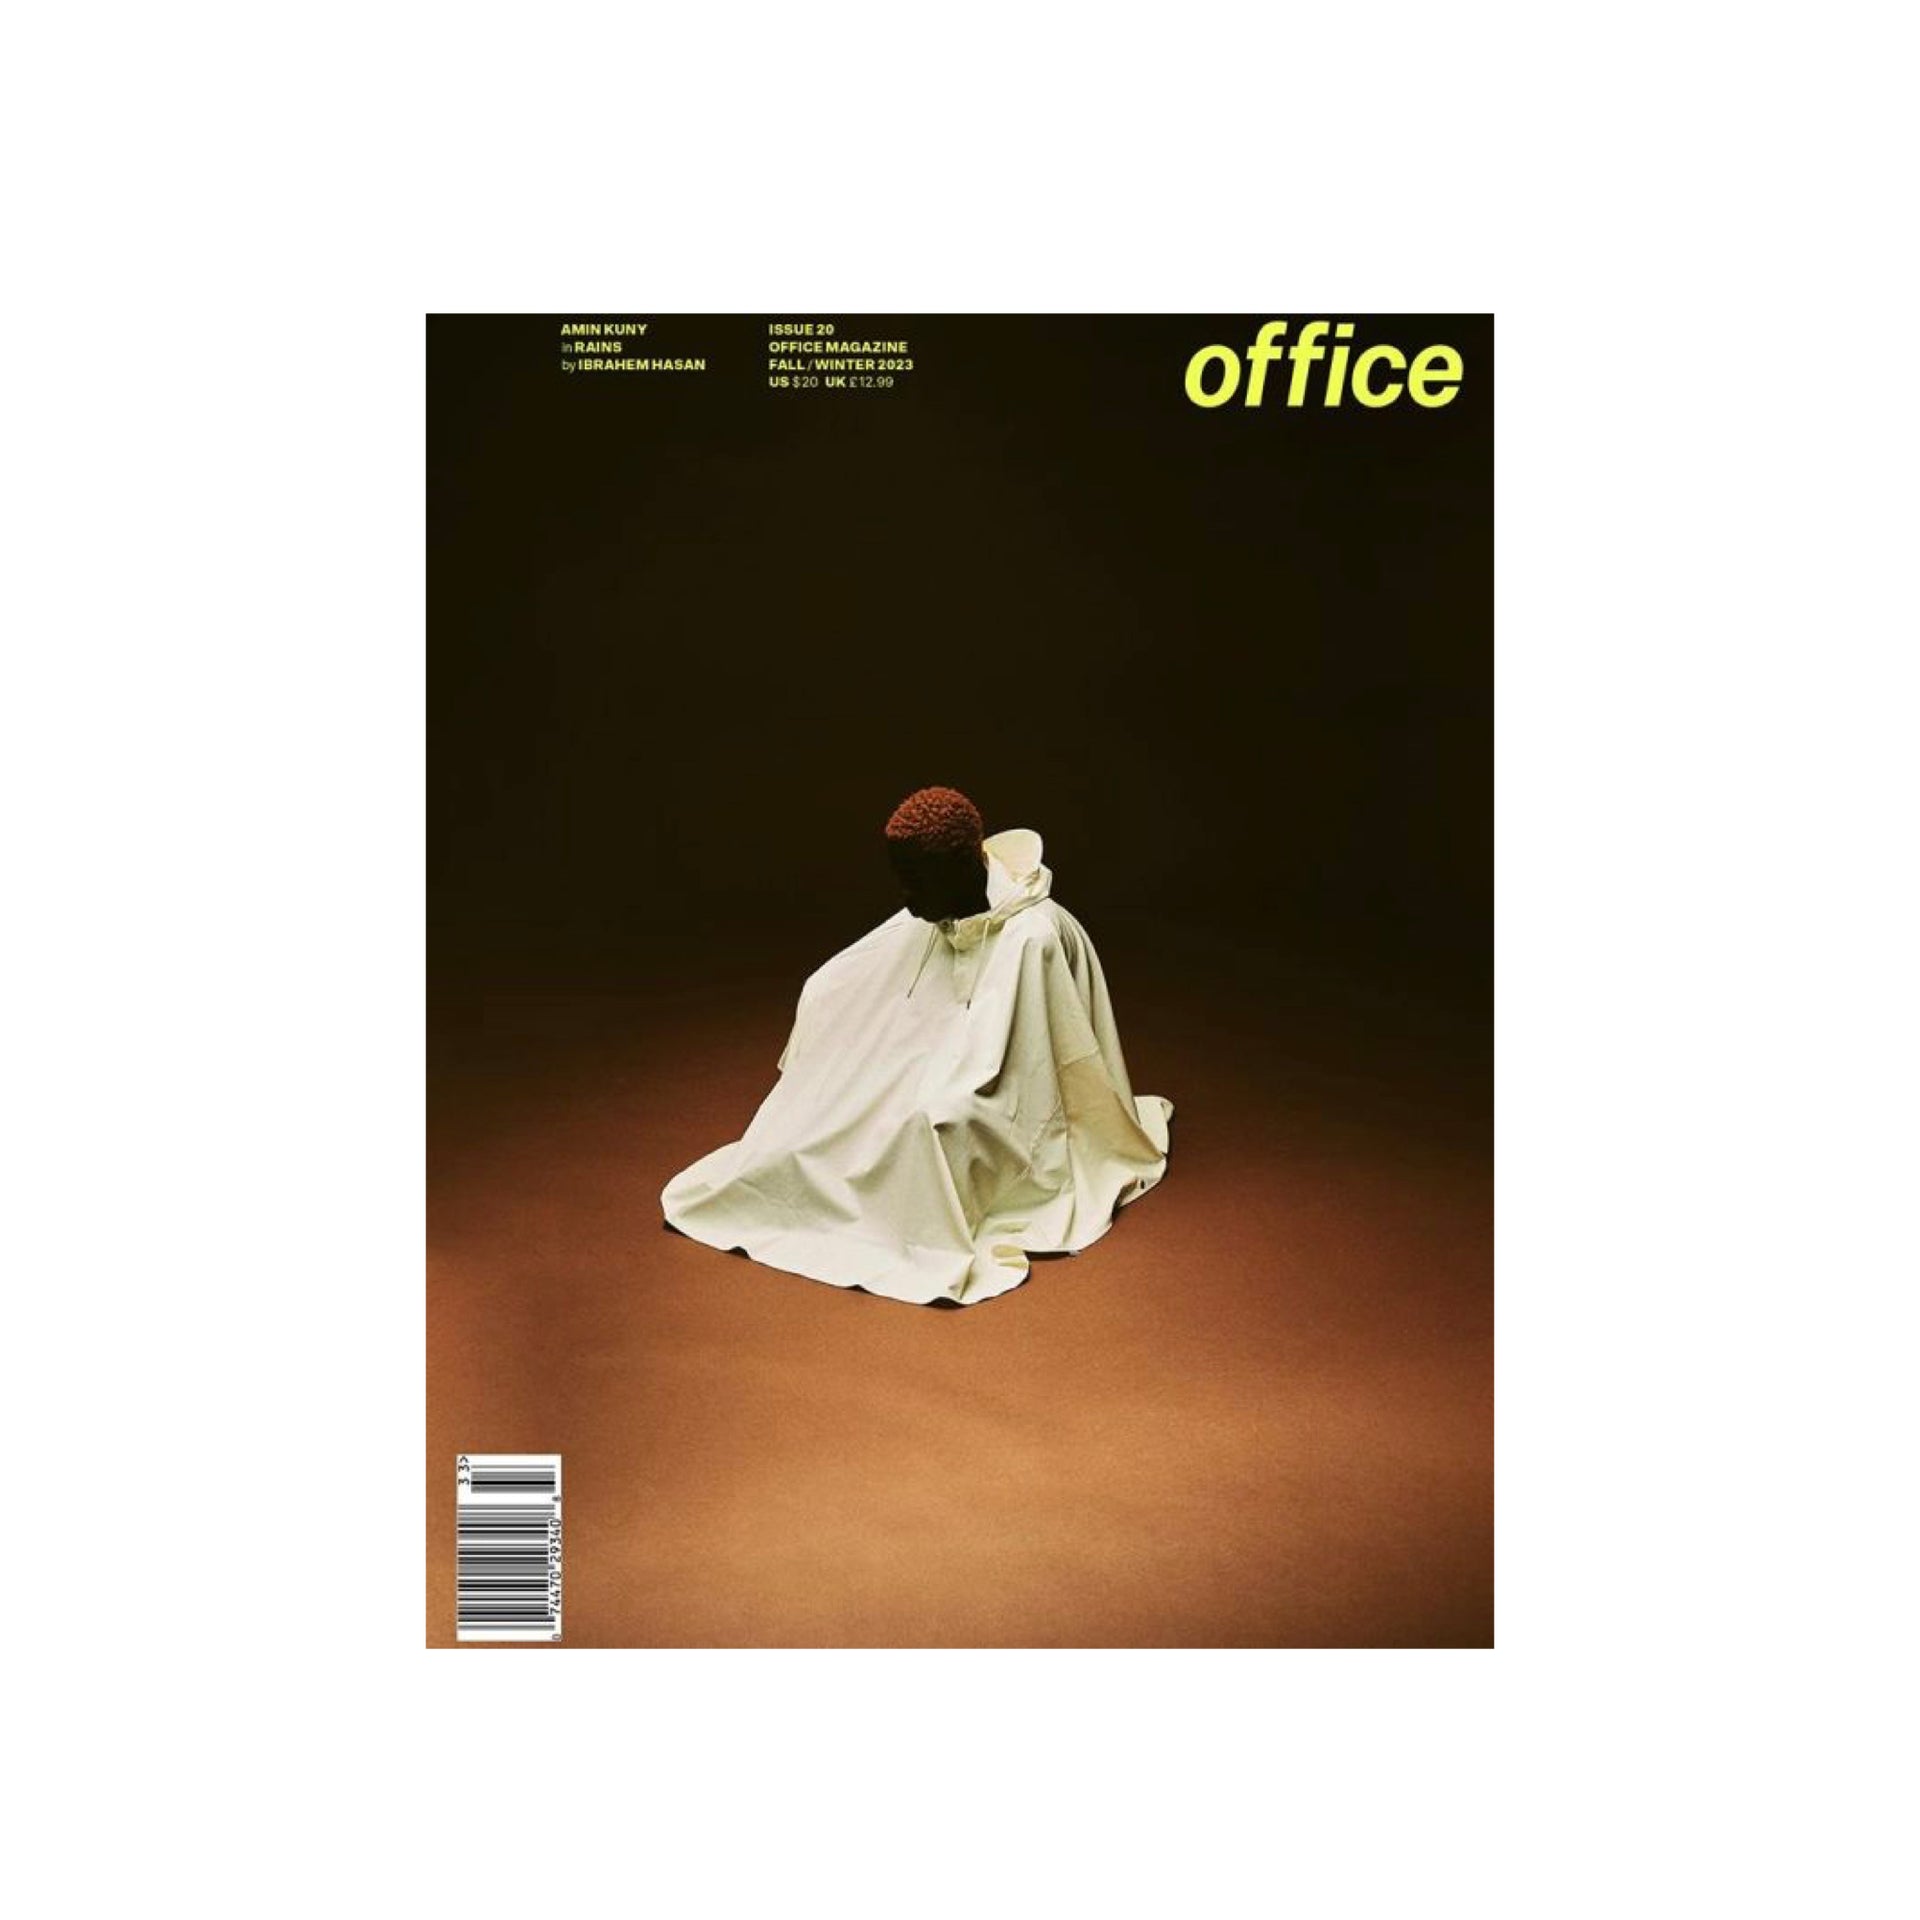 Office - Issue 20, Amin Kuny